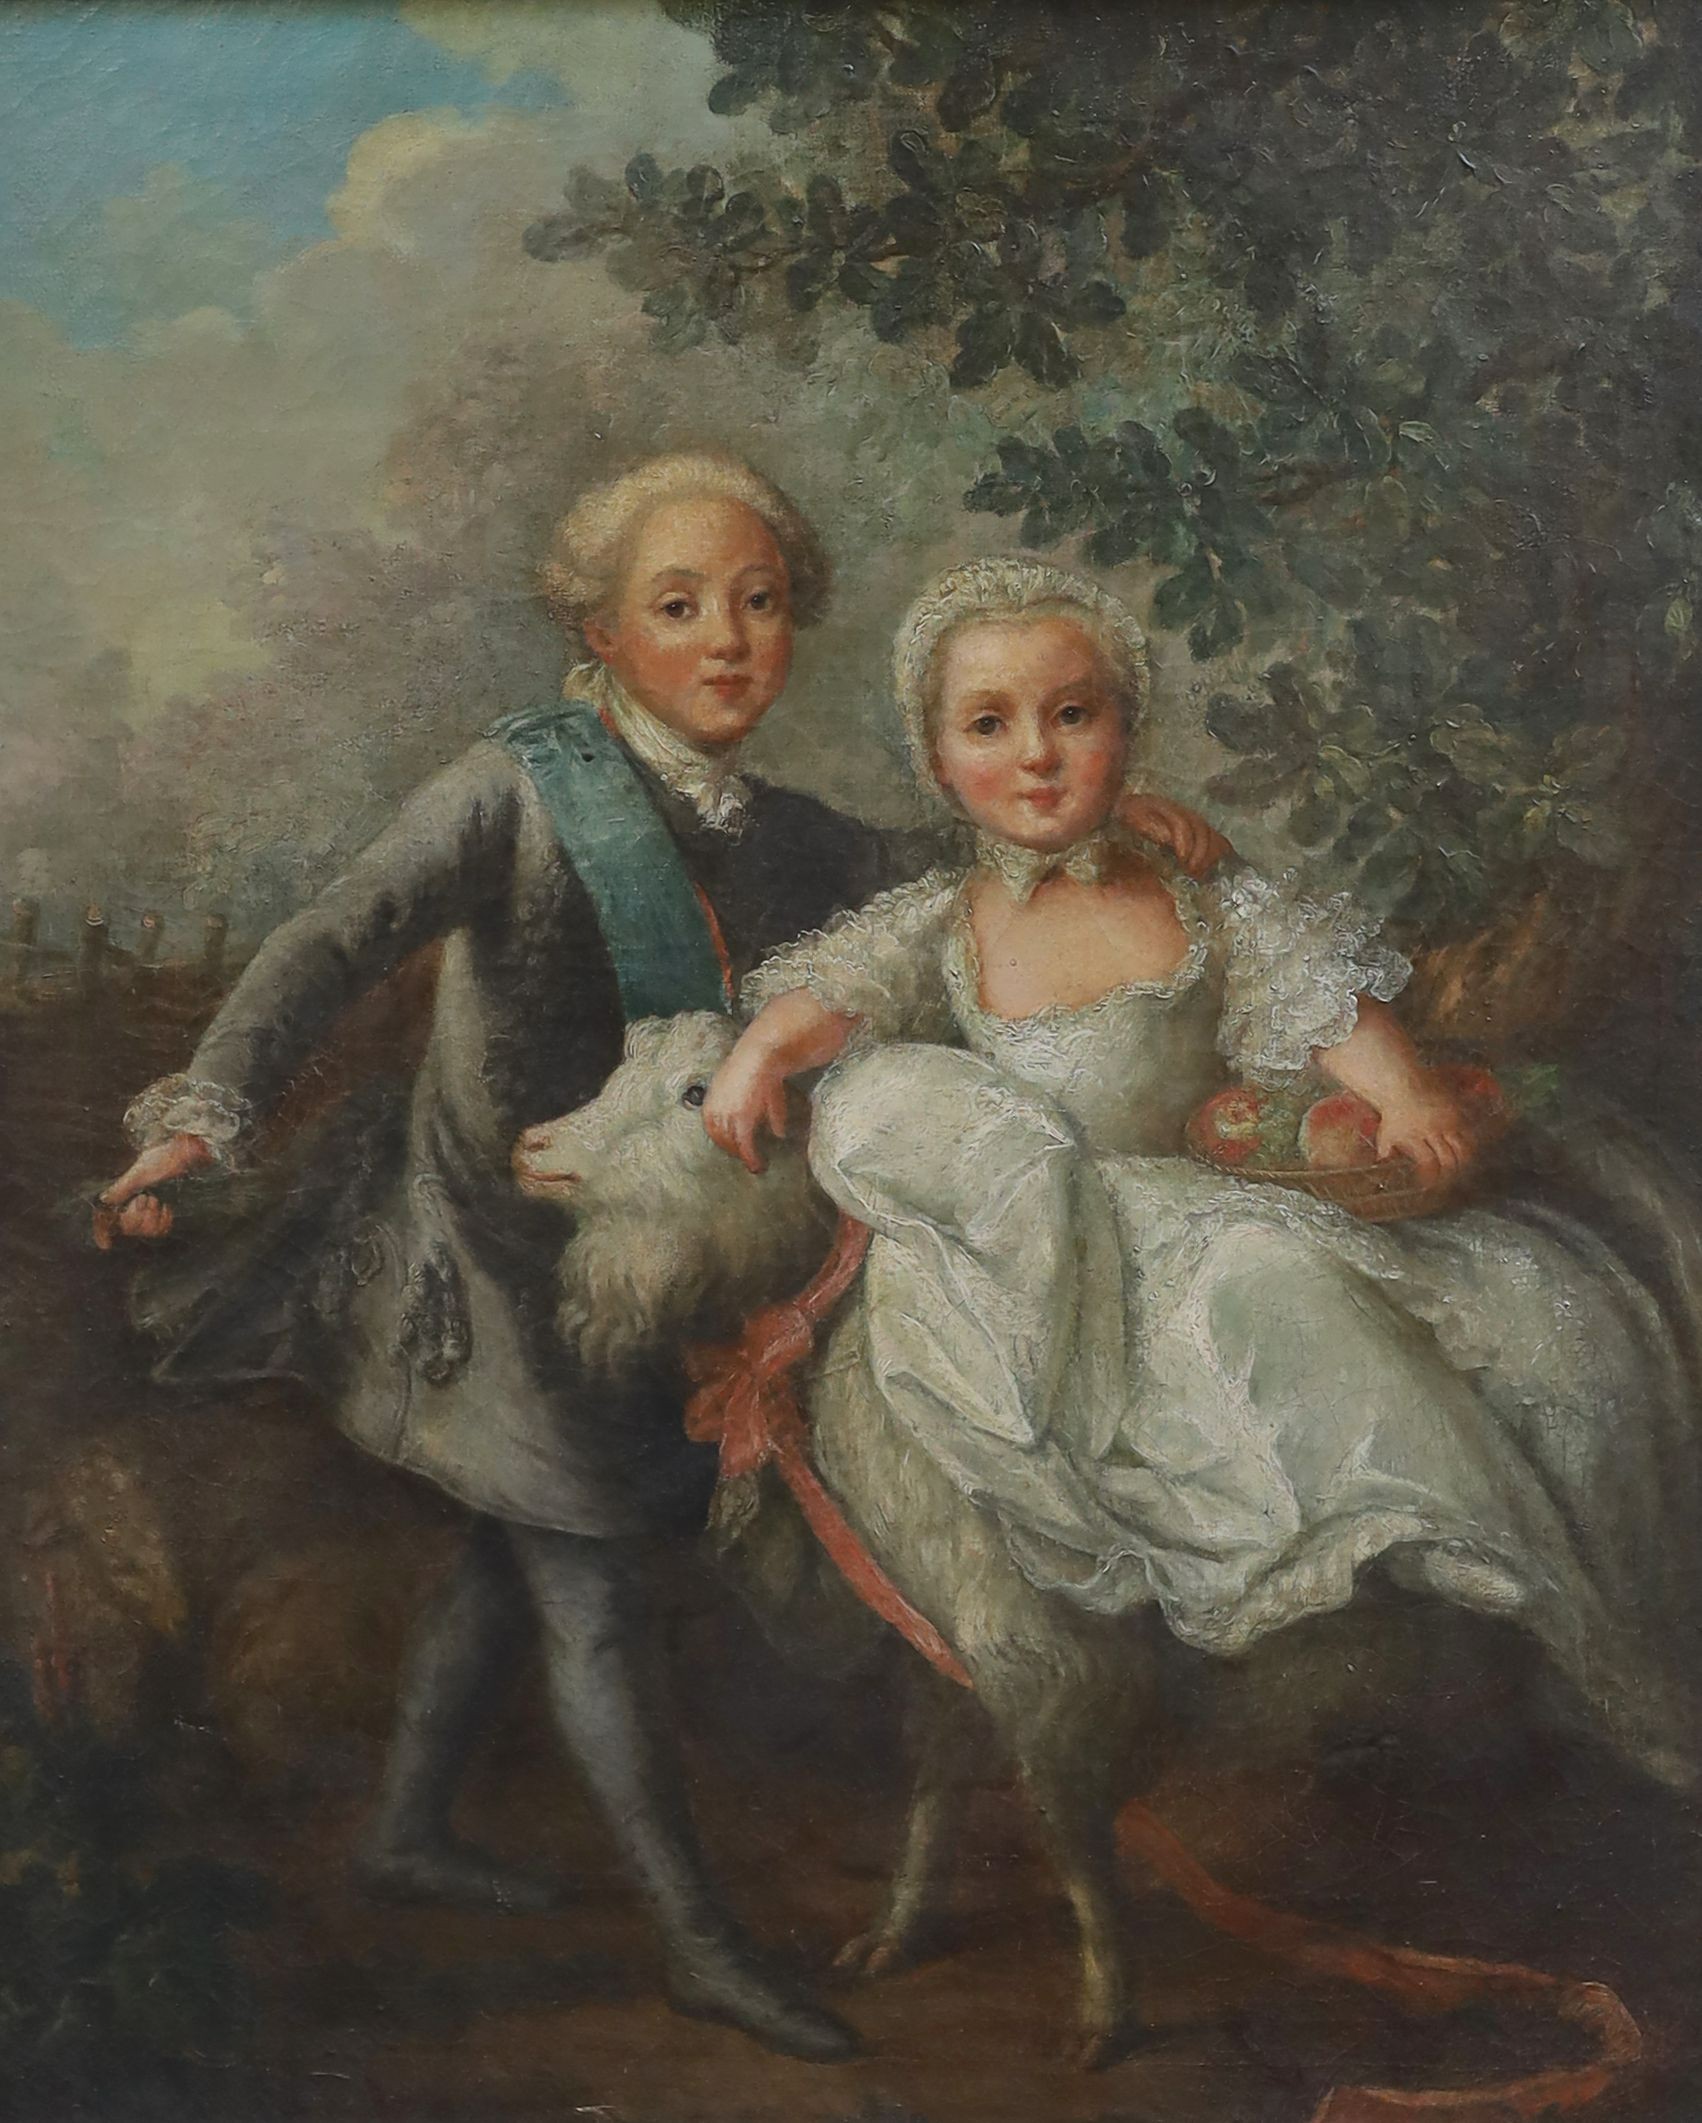 After François-Hubert Drouais (1727-1775), Le Comte d'Artois et sa sœur Madame Clotilde, oil on canvas, 72 x 59cm